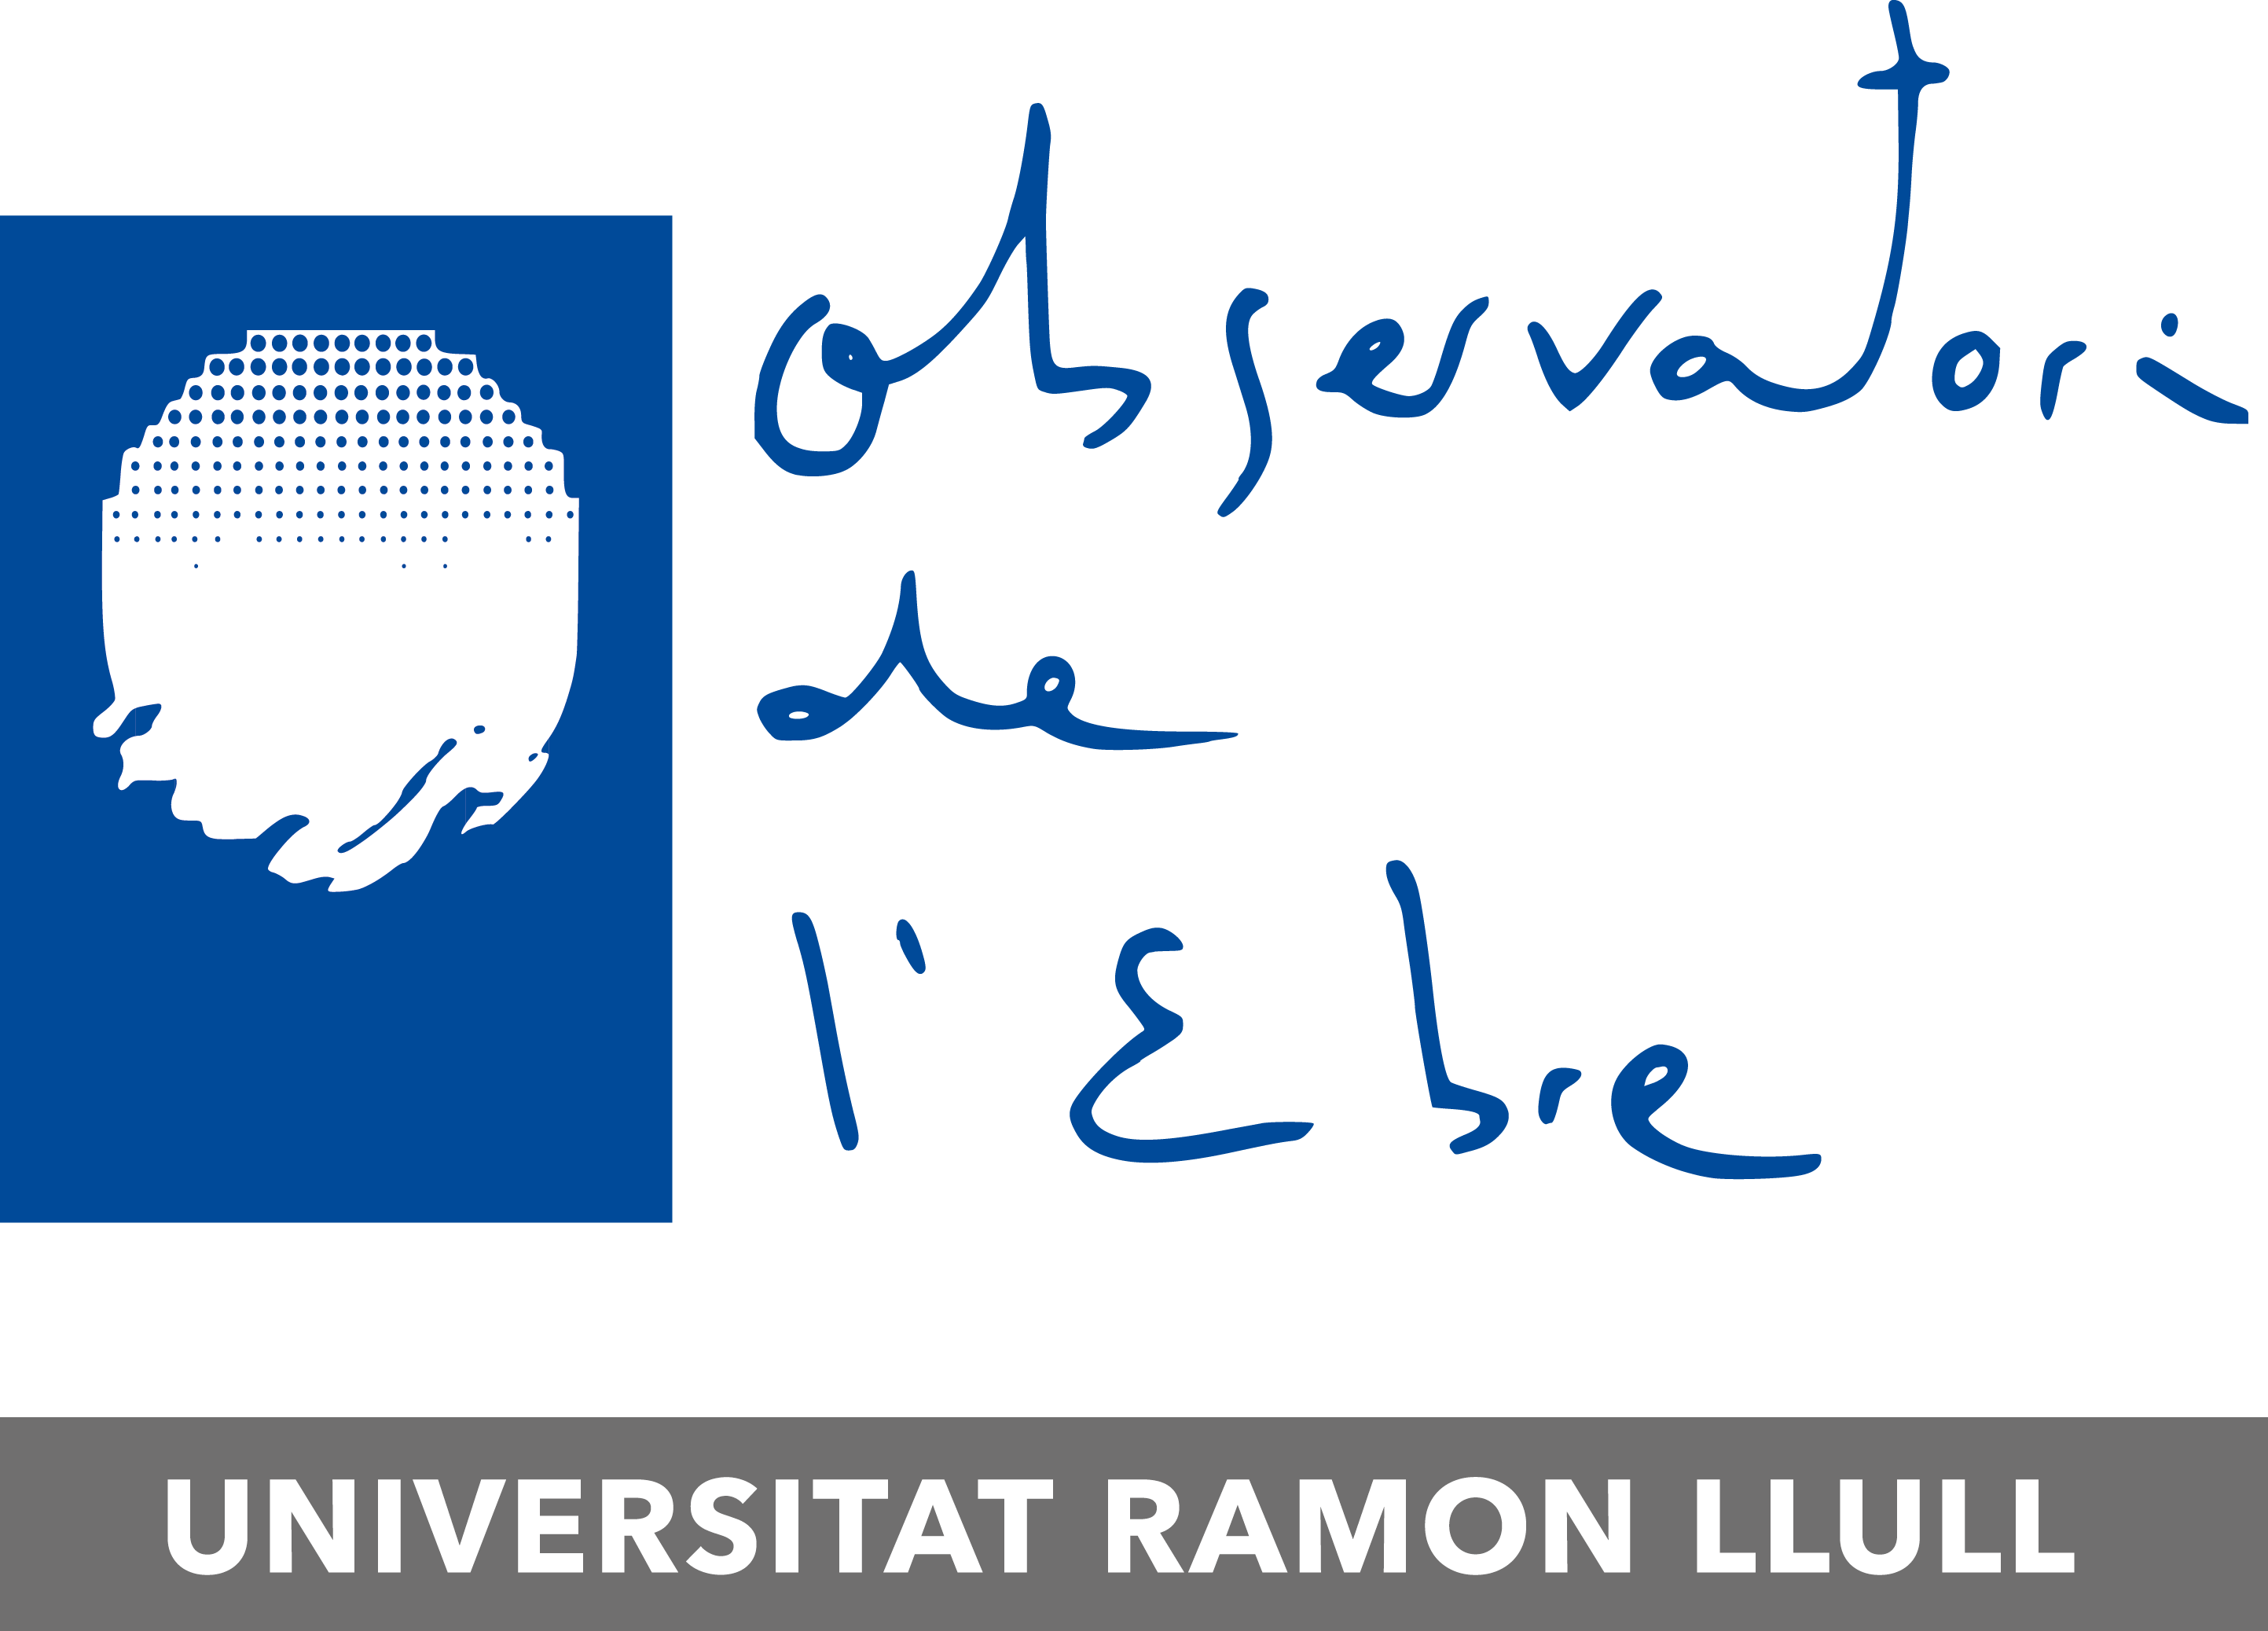 Logotip de la col·lecció